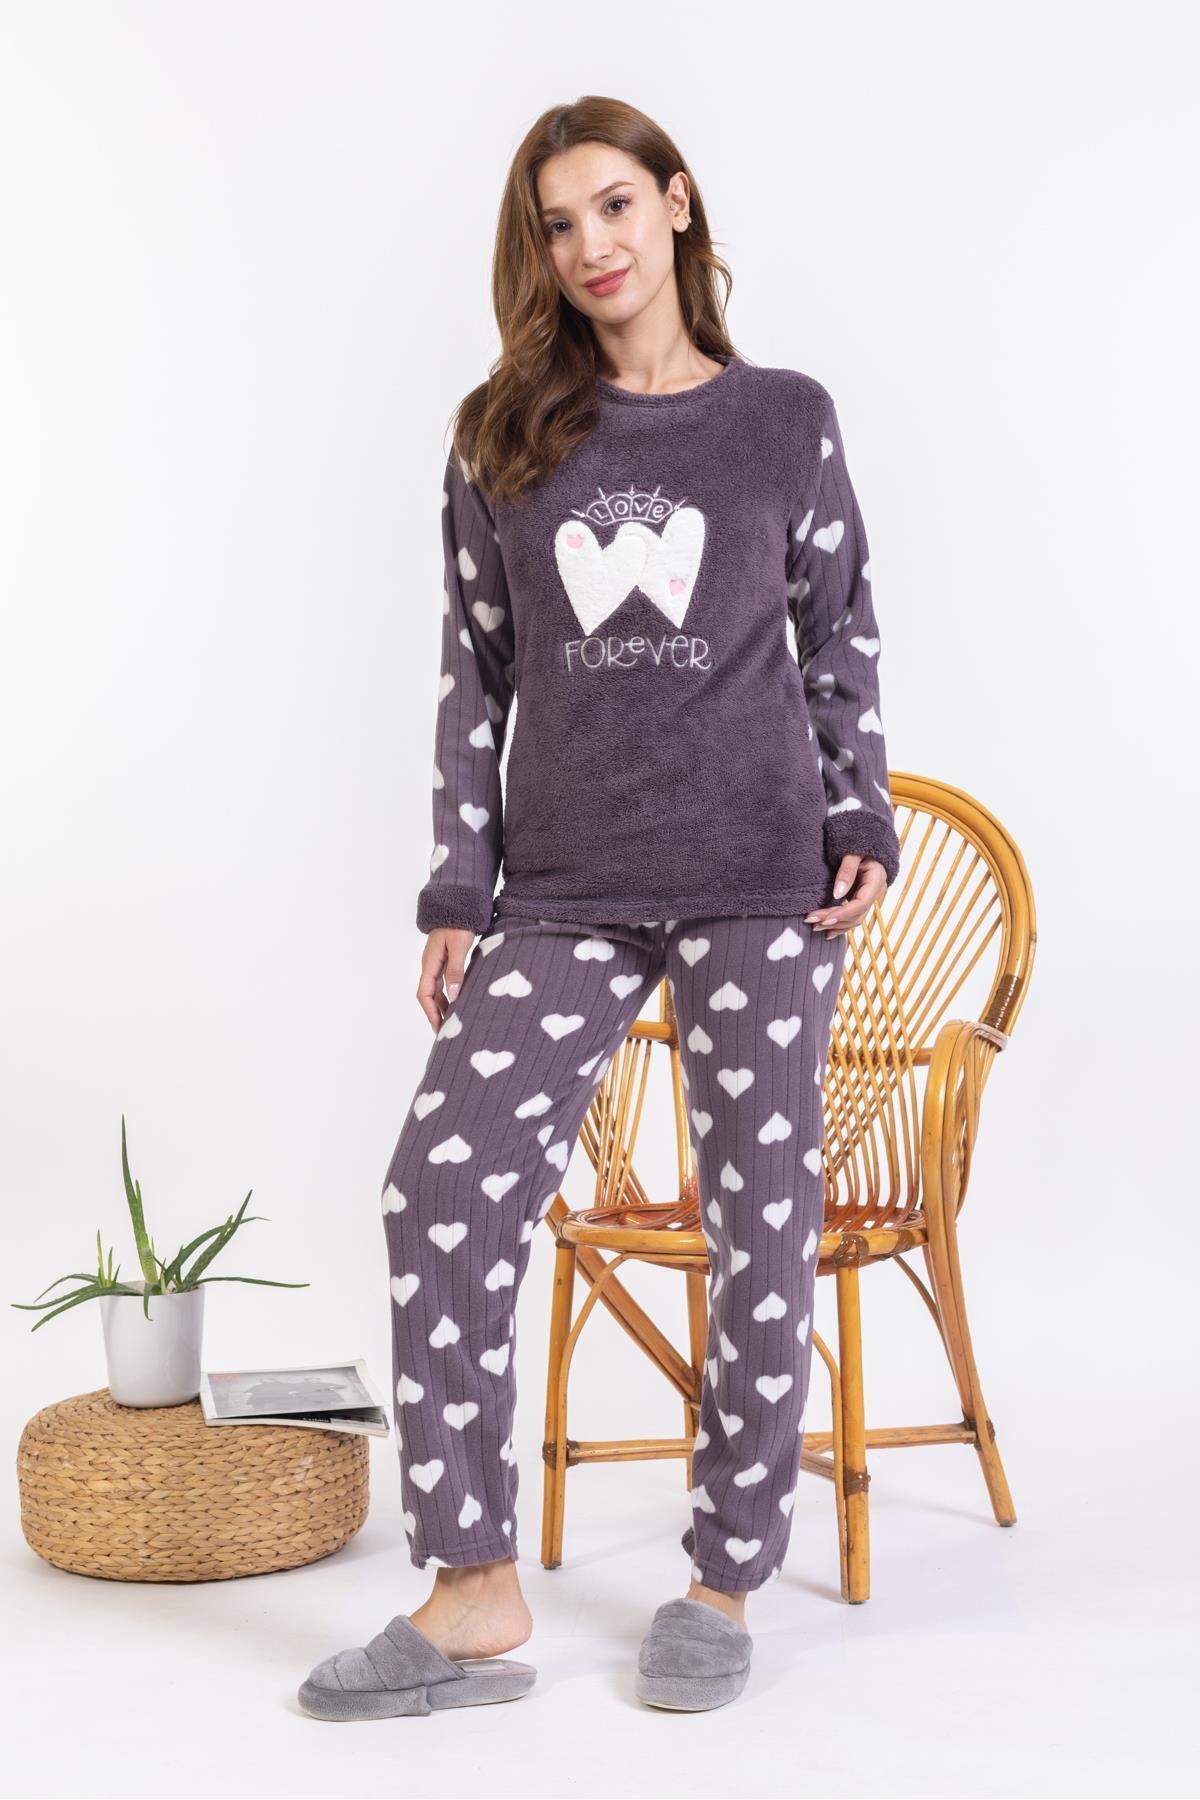 Mutlu City Yeni Sezon Sonbahar/kış Kadın Welsoft Polar Yuvarlak Yaka Kalp Desenli Kalın Pijama Takımı 30008